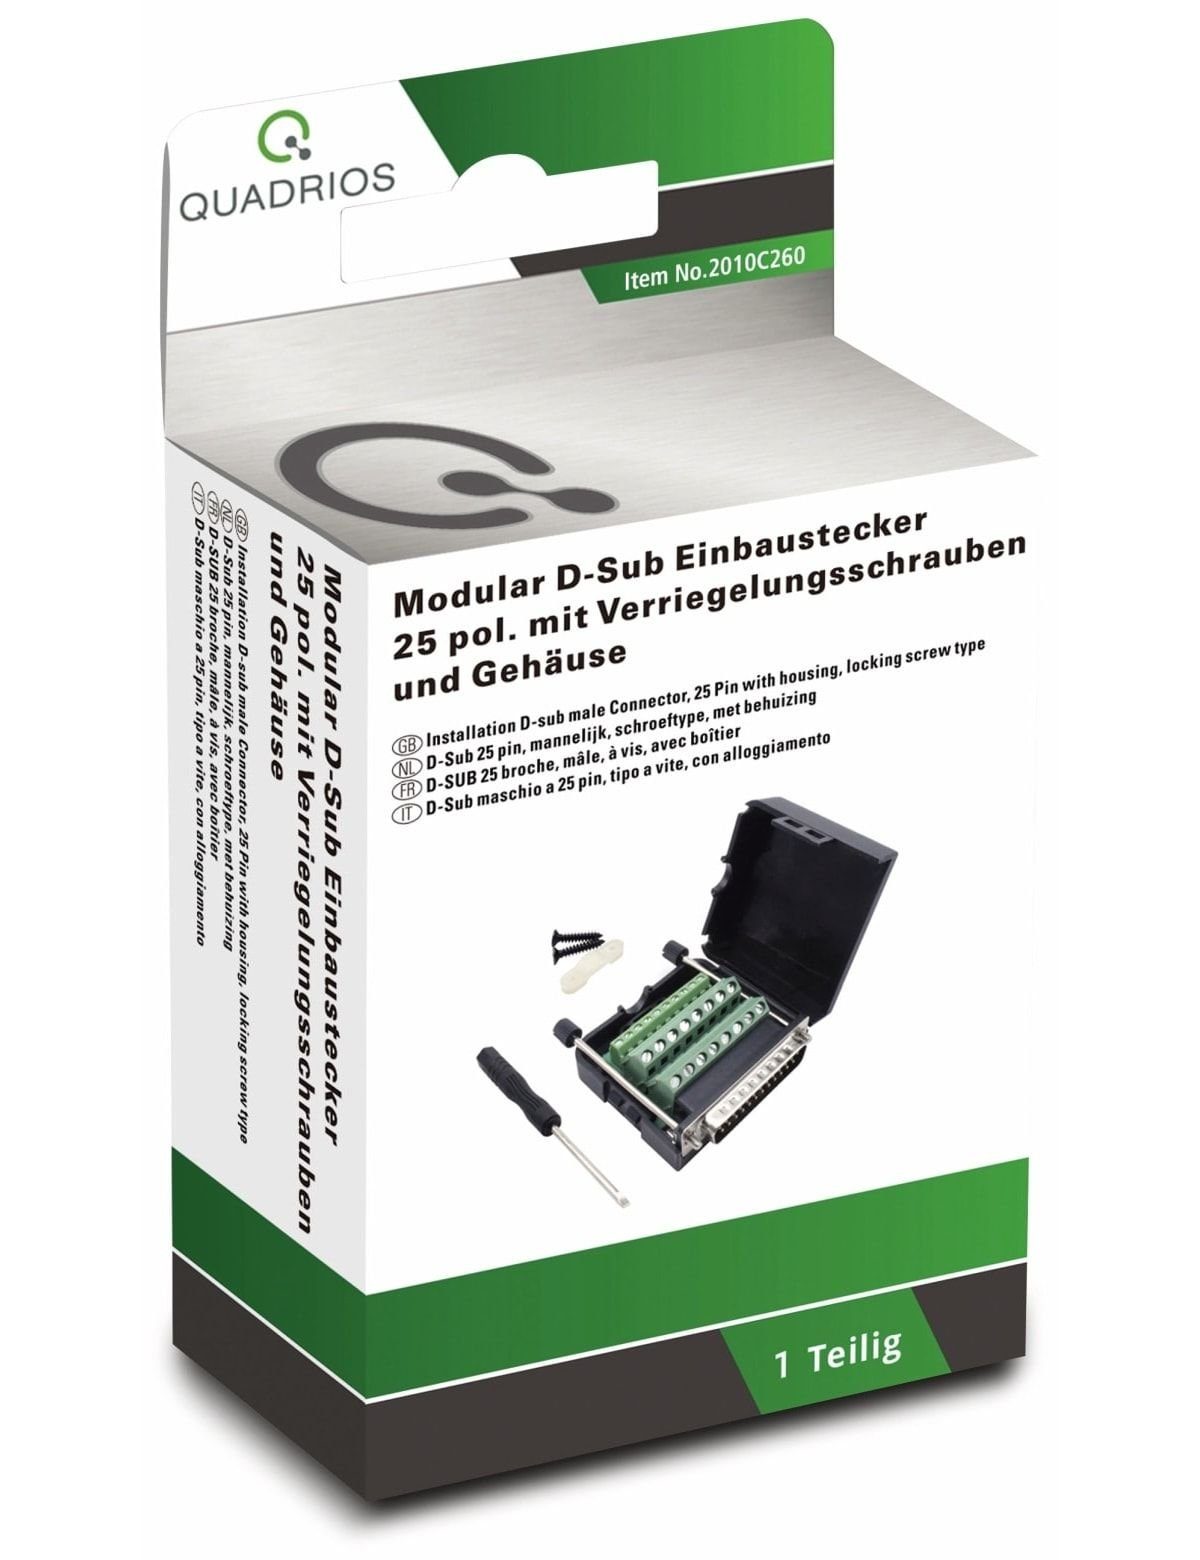 D-Sub 2010C260, Klemmen Quadrios QUADRIOS, USB-Modular-Set,